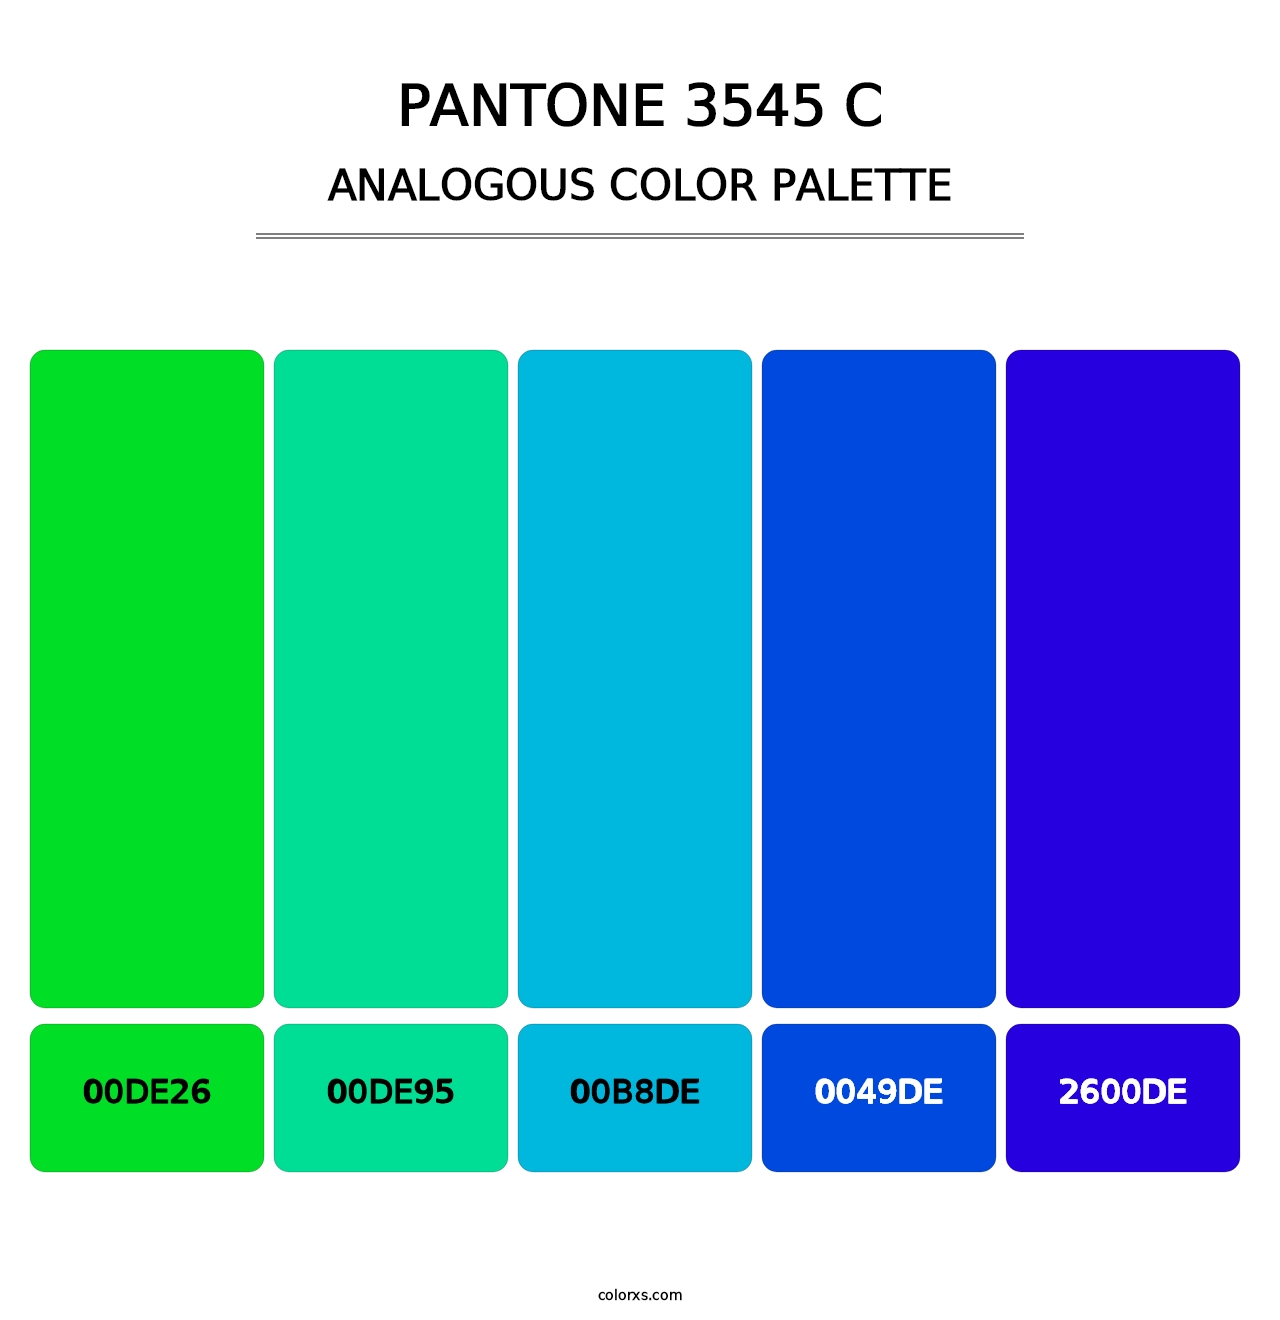 PANTONE 3545 C - Analogous Color Palette